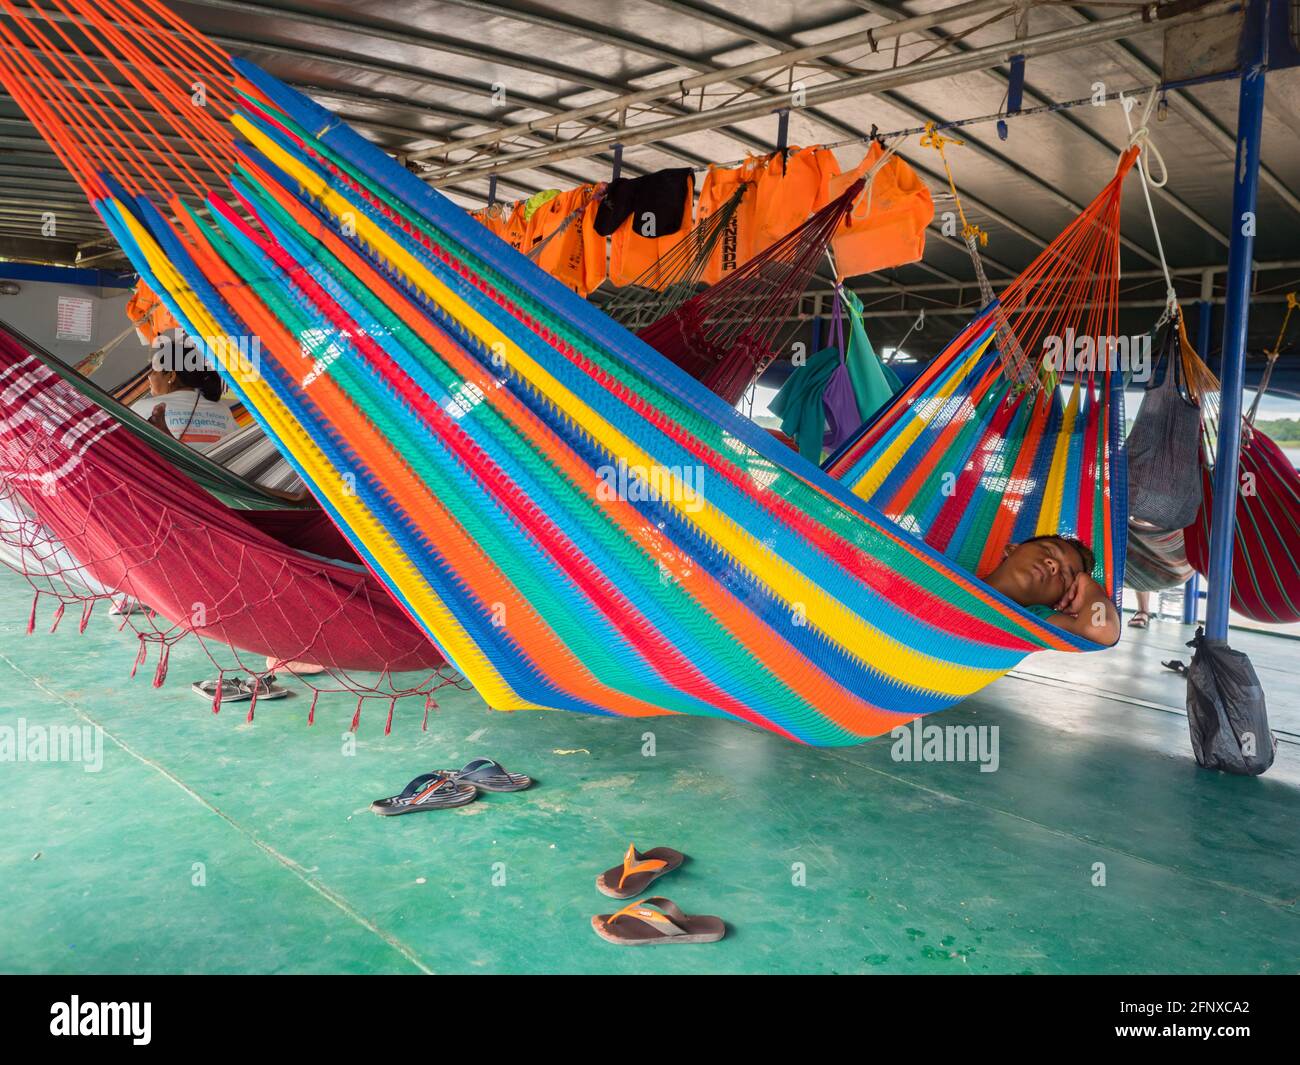 Rio delle Amazzoni, Perù - 19 settembre 2019: Molte belle amache colorate sulla barca cargo. Amazzonia, sentiero da Santa Rosa a Iquitos. Rio delle Amazzoni, Perù Foto Stock